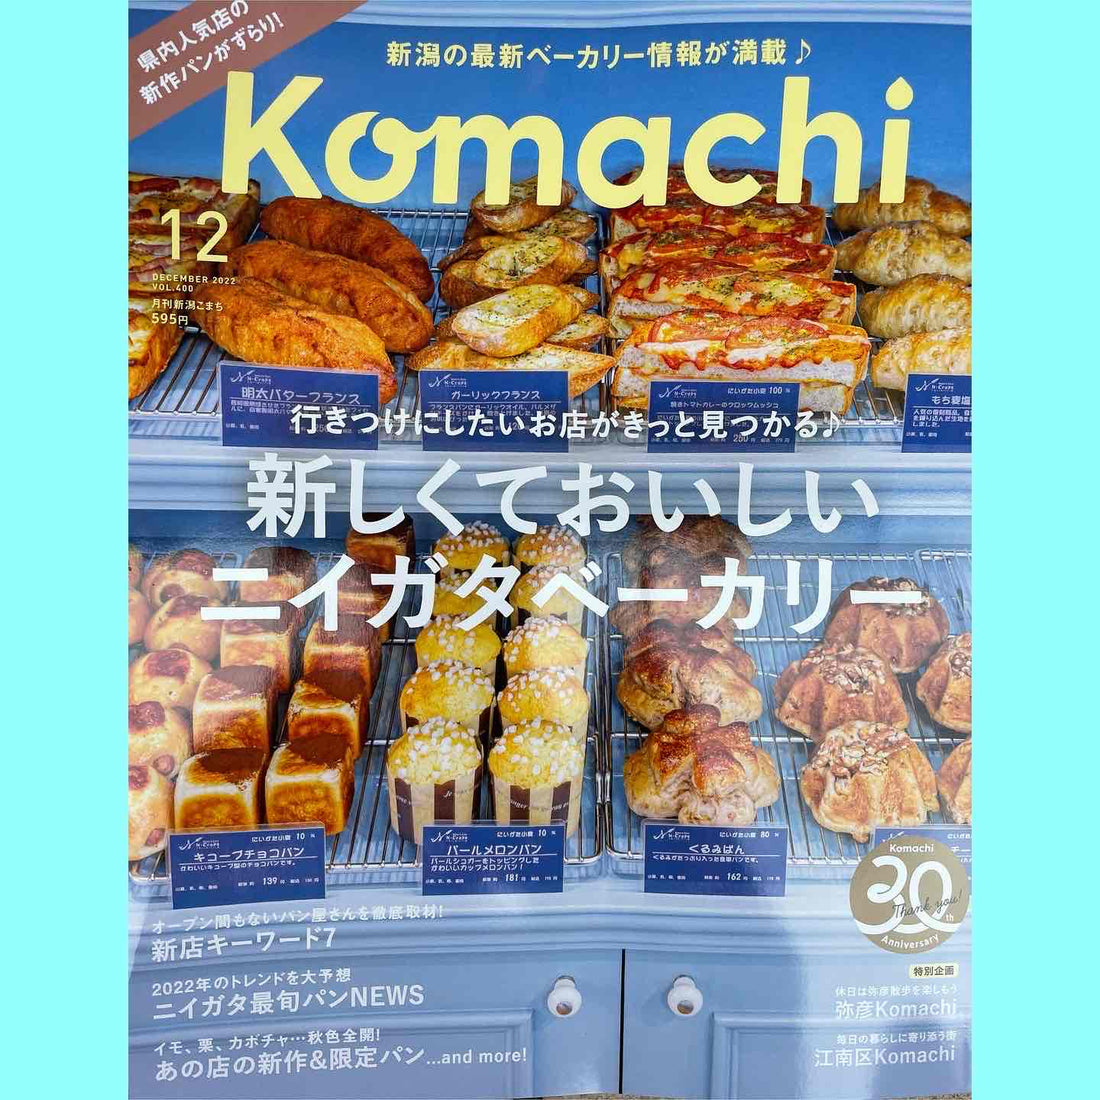 【メディア掲載】KOMACHI12月号(ニューズライン)